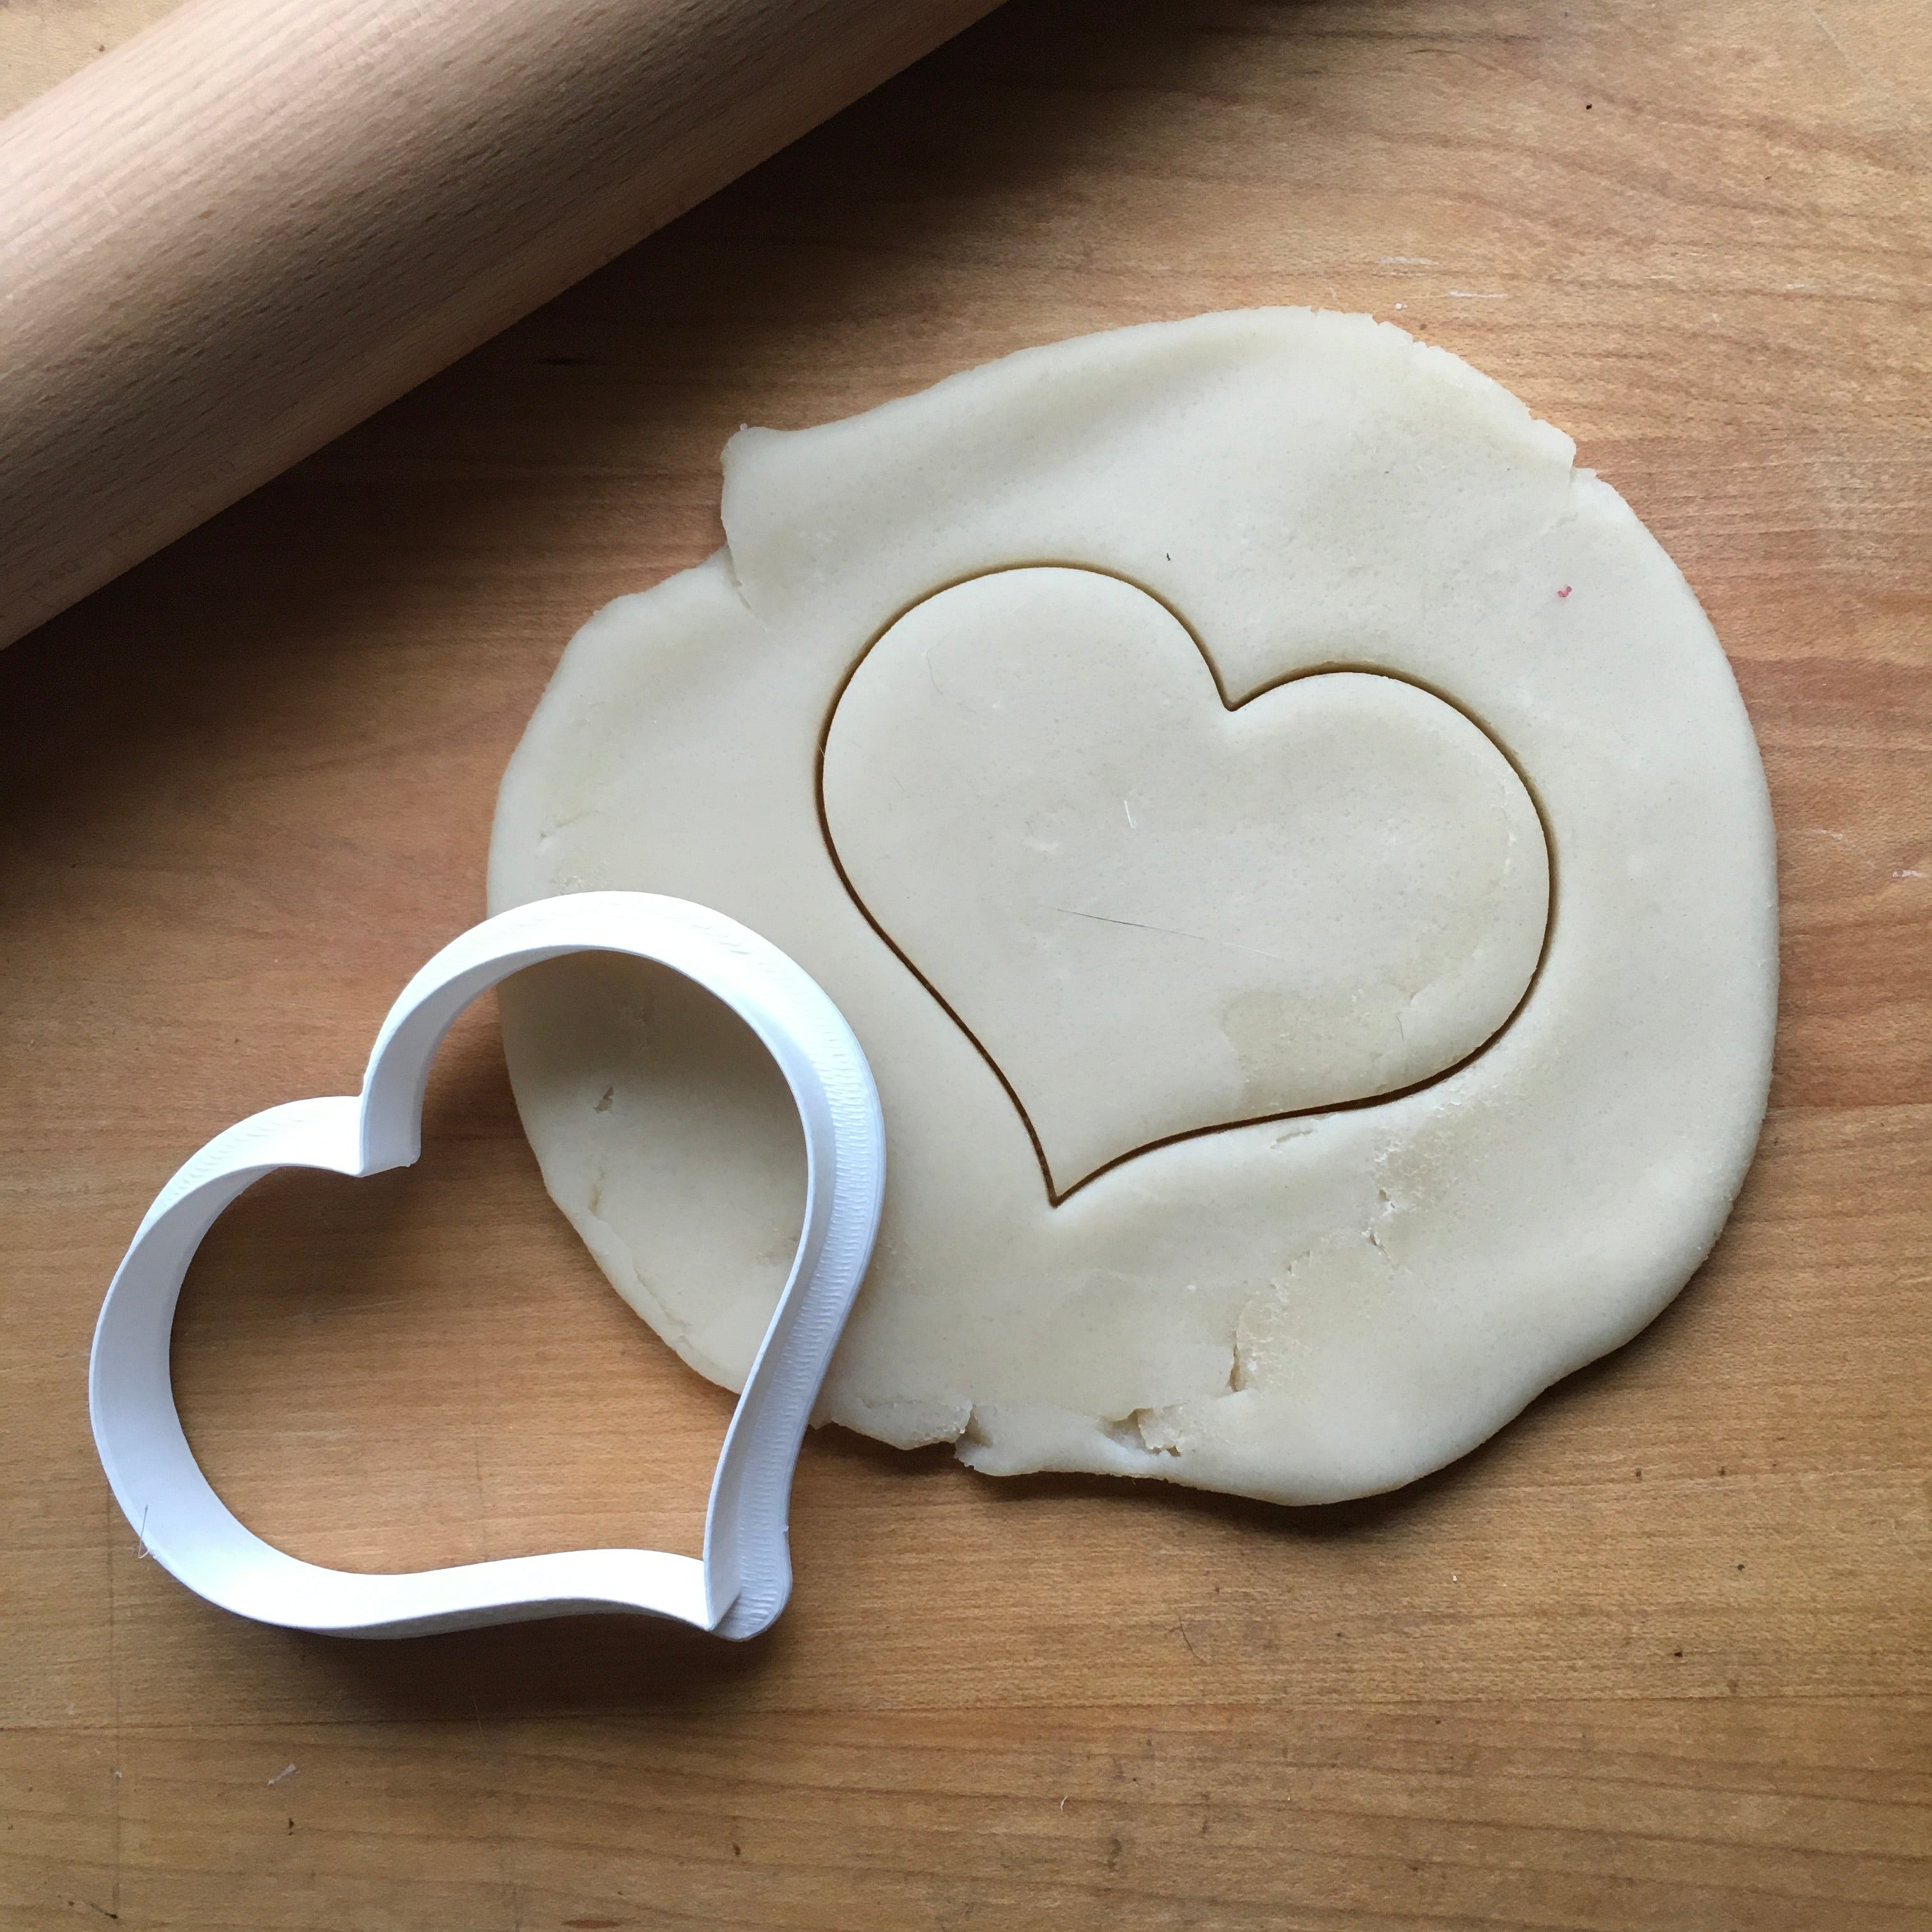 Leslie Heart Cookie Cutter/Dishwasher Safe